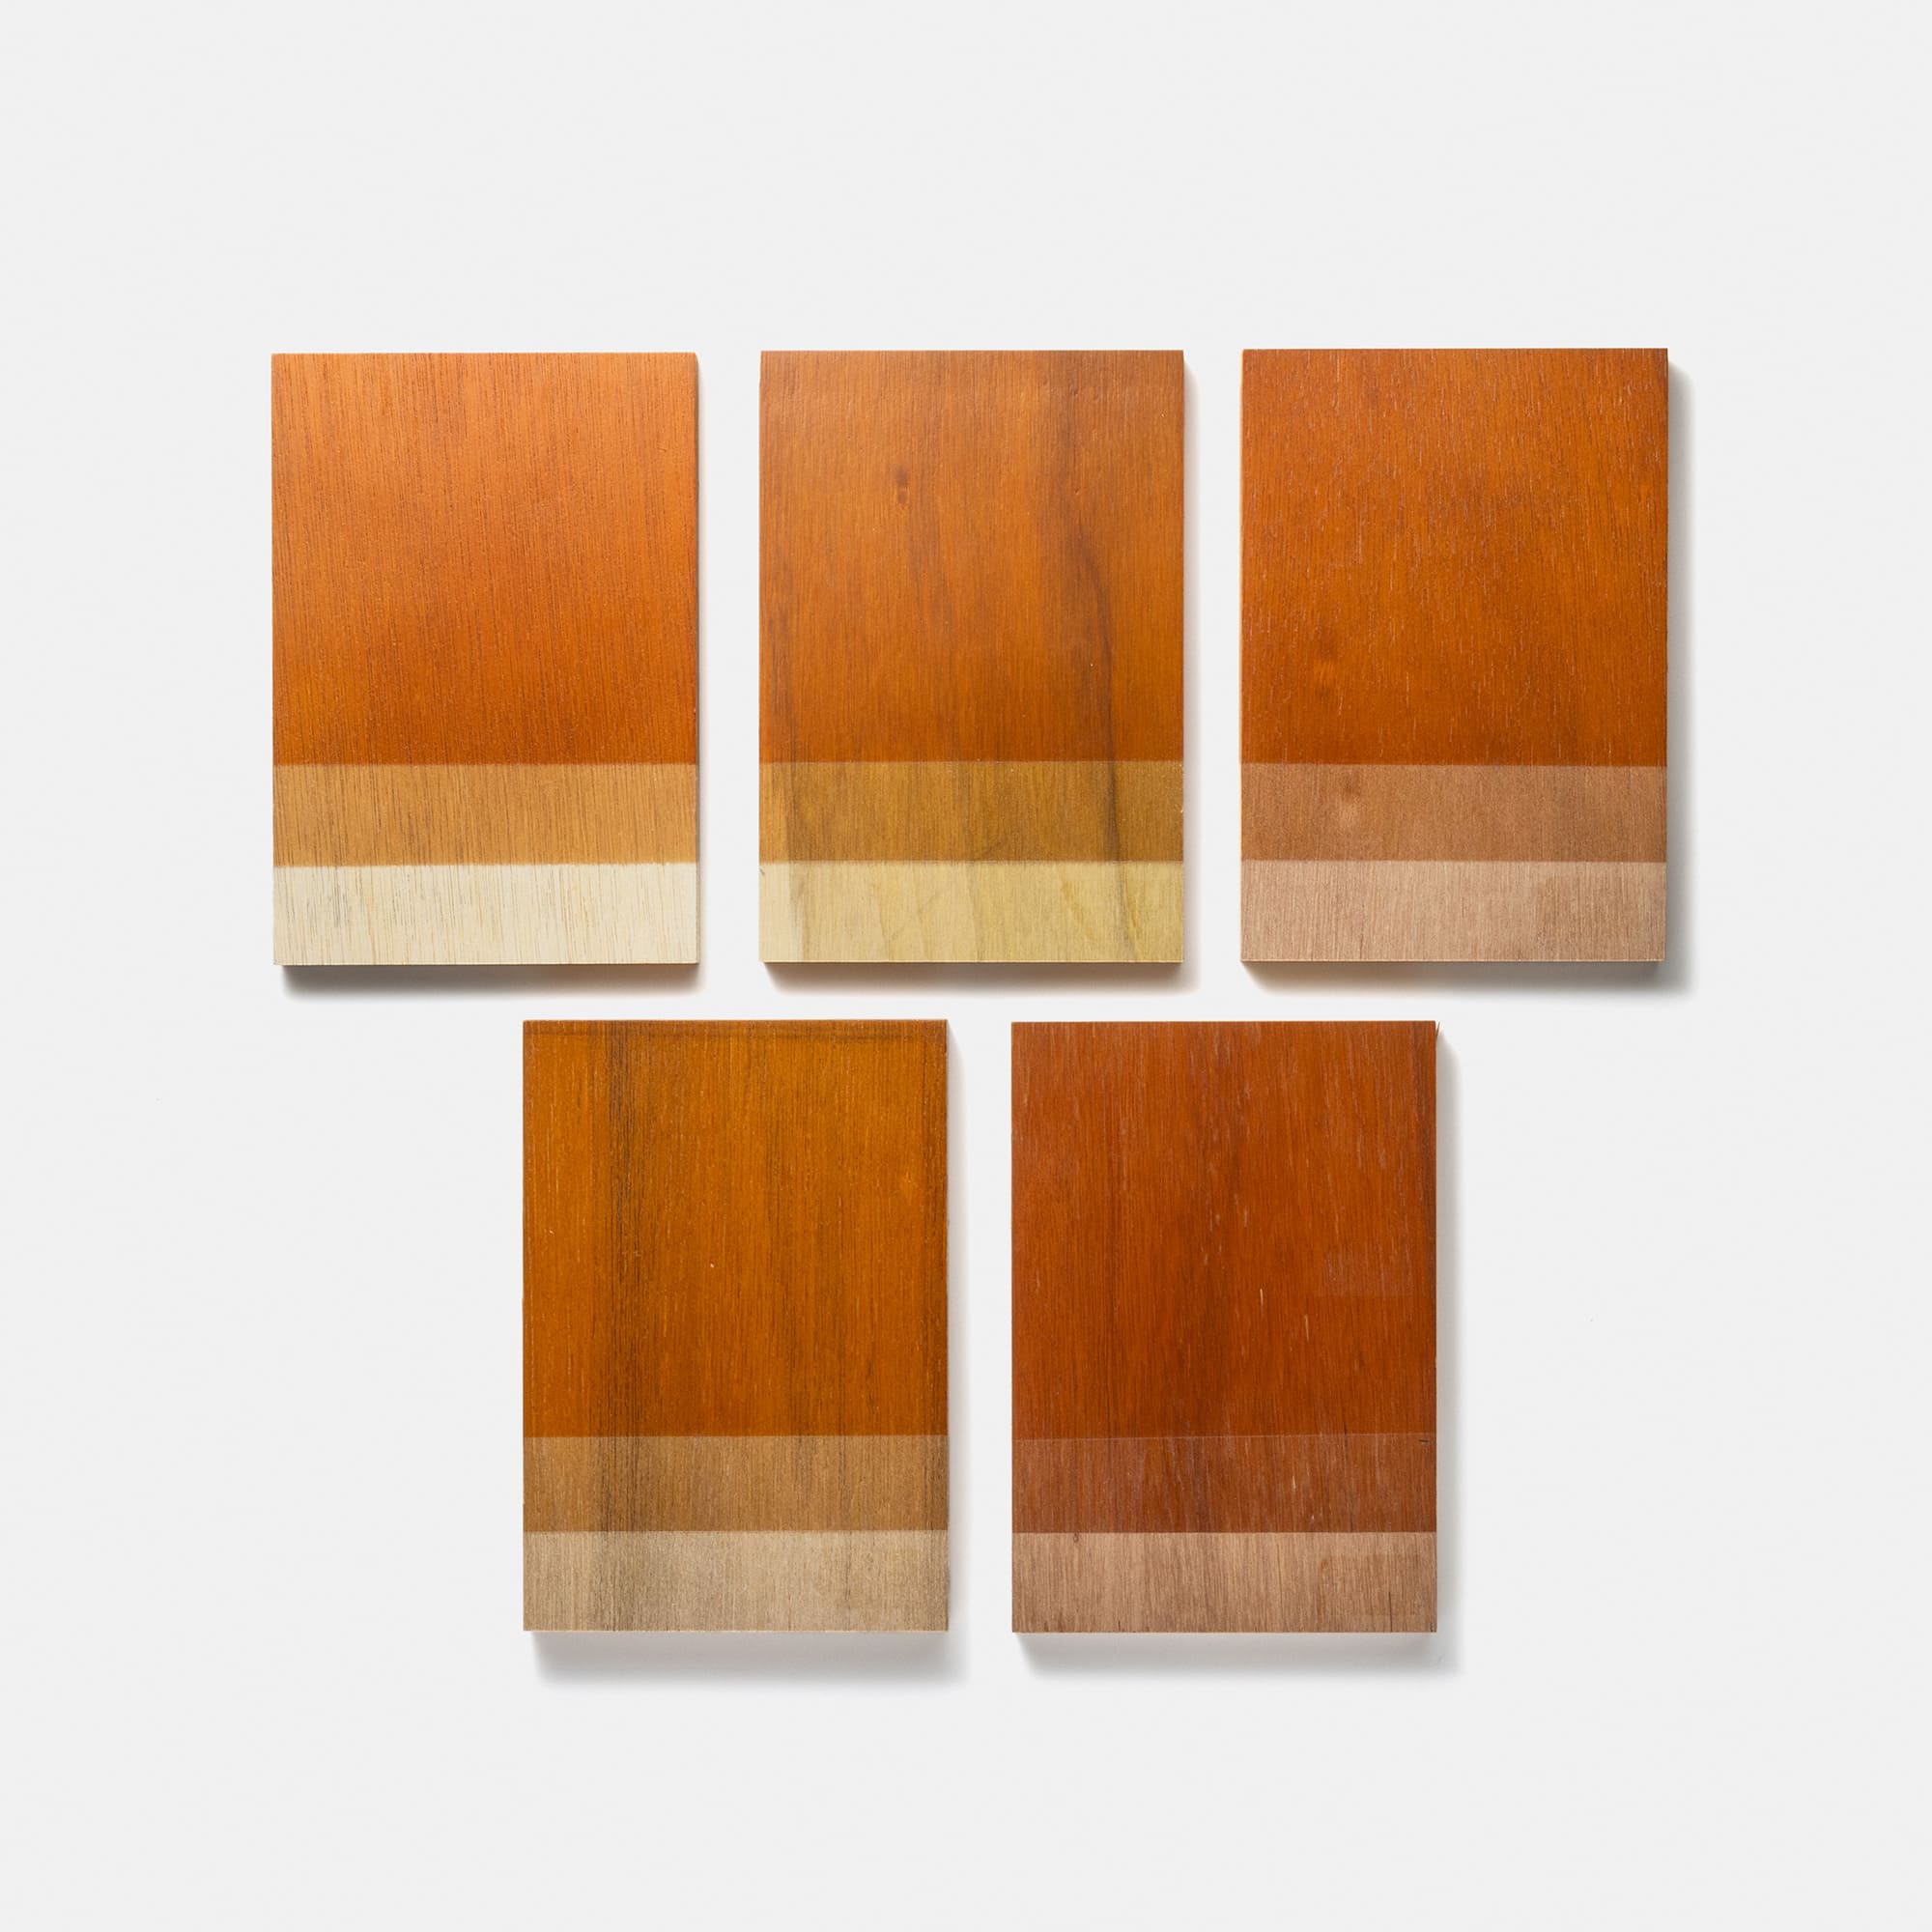 木製シェルビング 棚板 W900 PS-BK009-07-G289 ラワン合板は基材の色の幅があるため、下地の色に合わせて調色しています